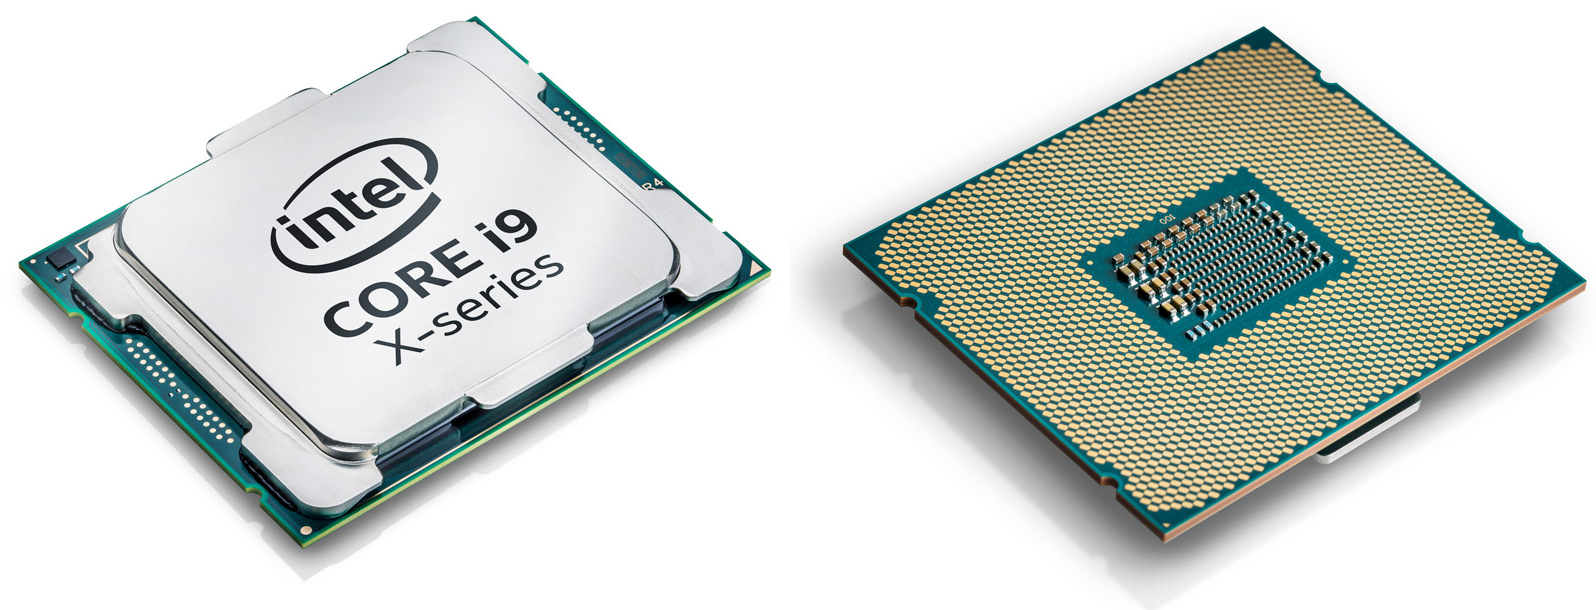 Intel CORE i9 CPU